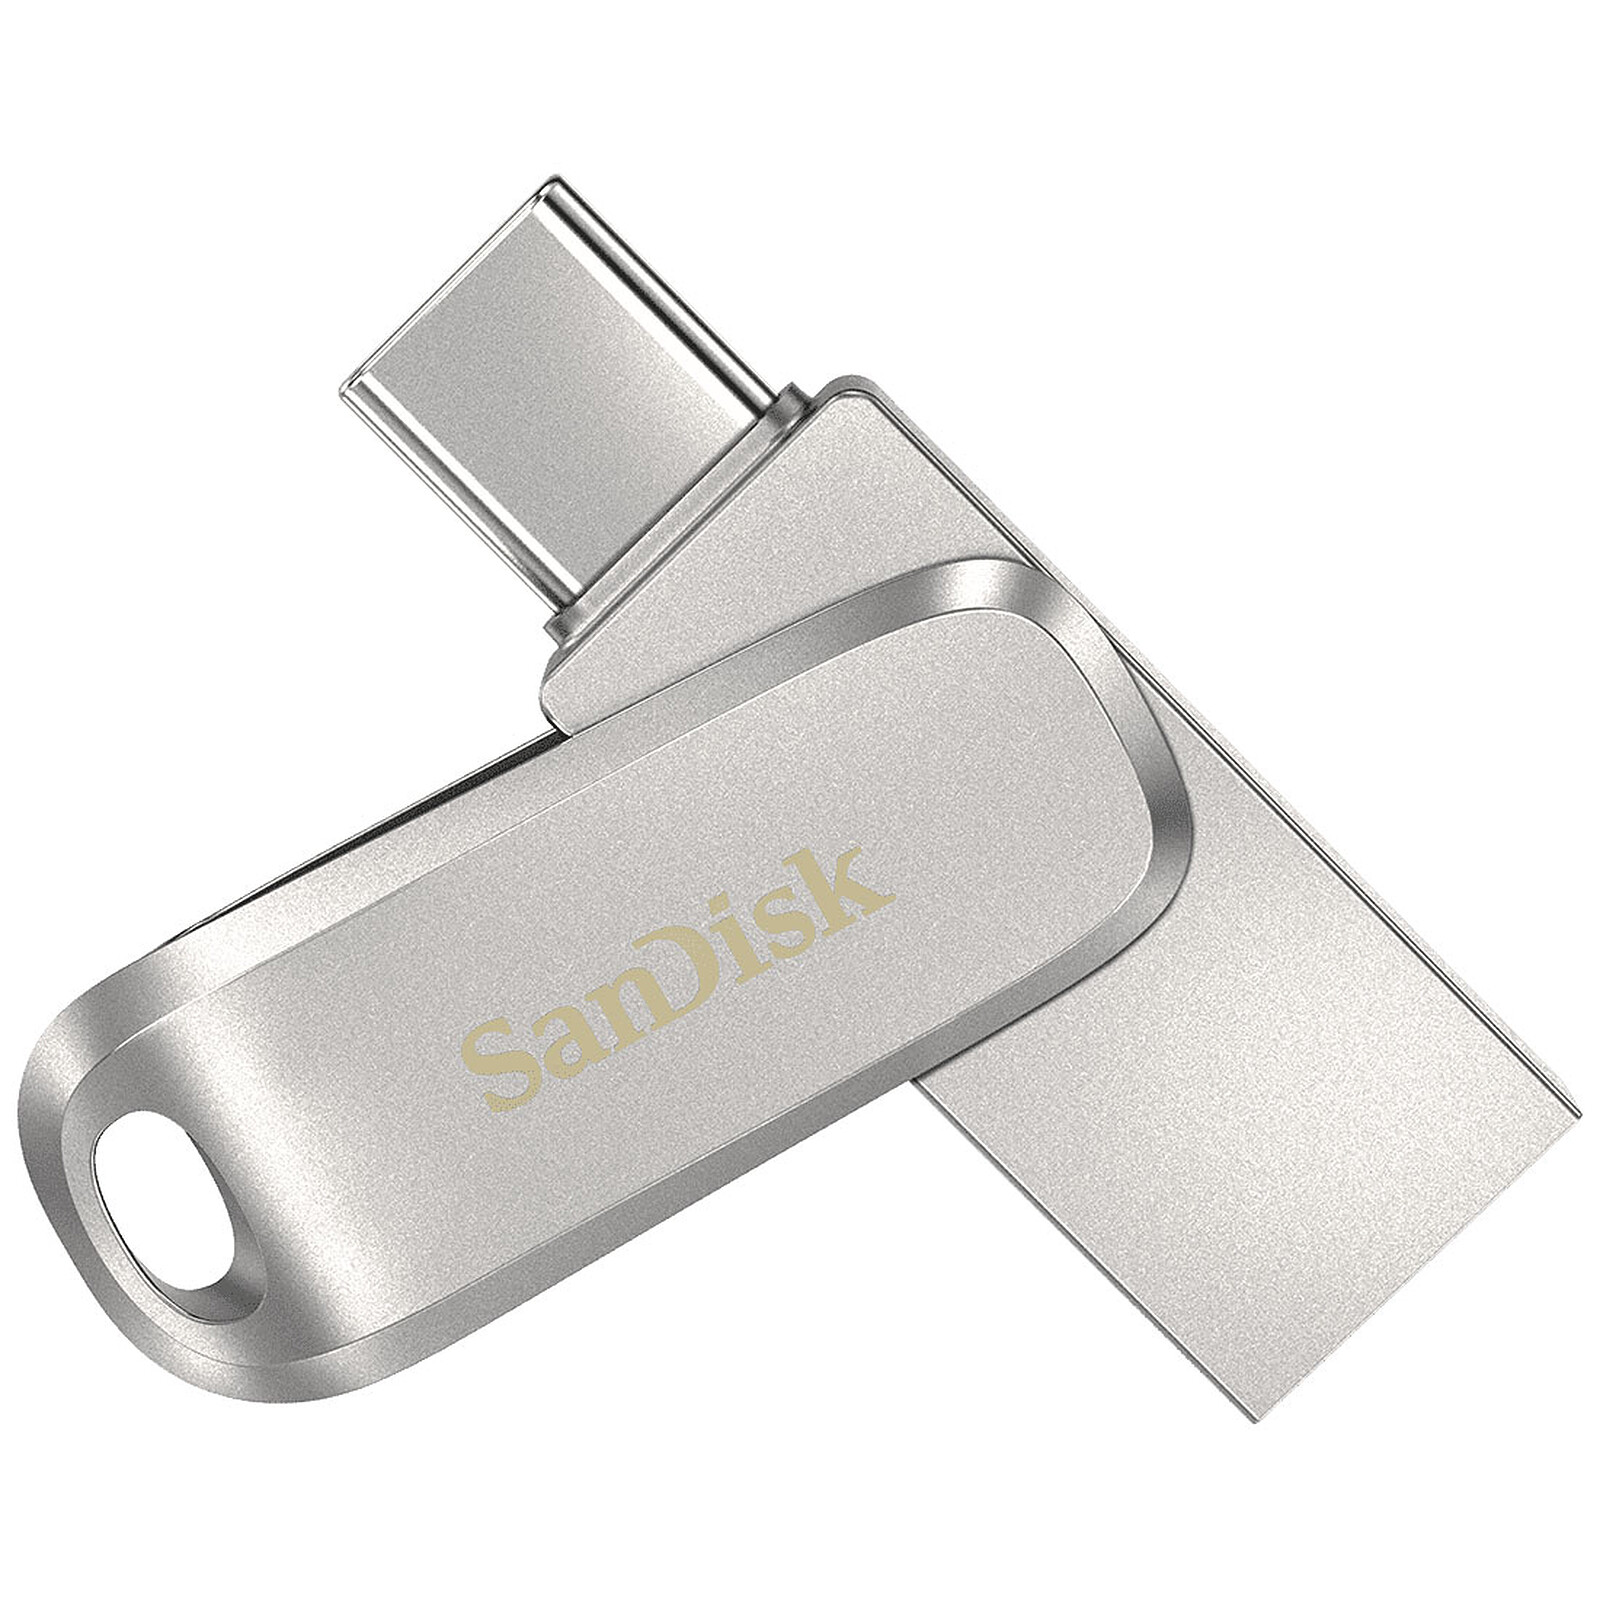 SanDisk Ultra Dual Drive Go USB-C 256 Go - Clé USB - LDLC